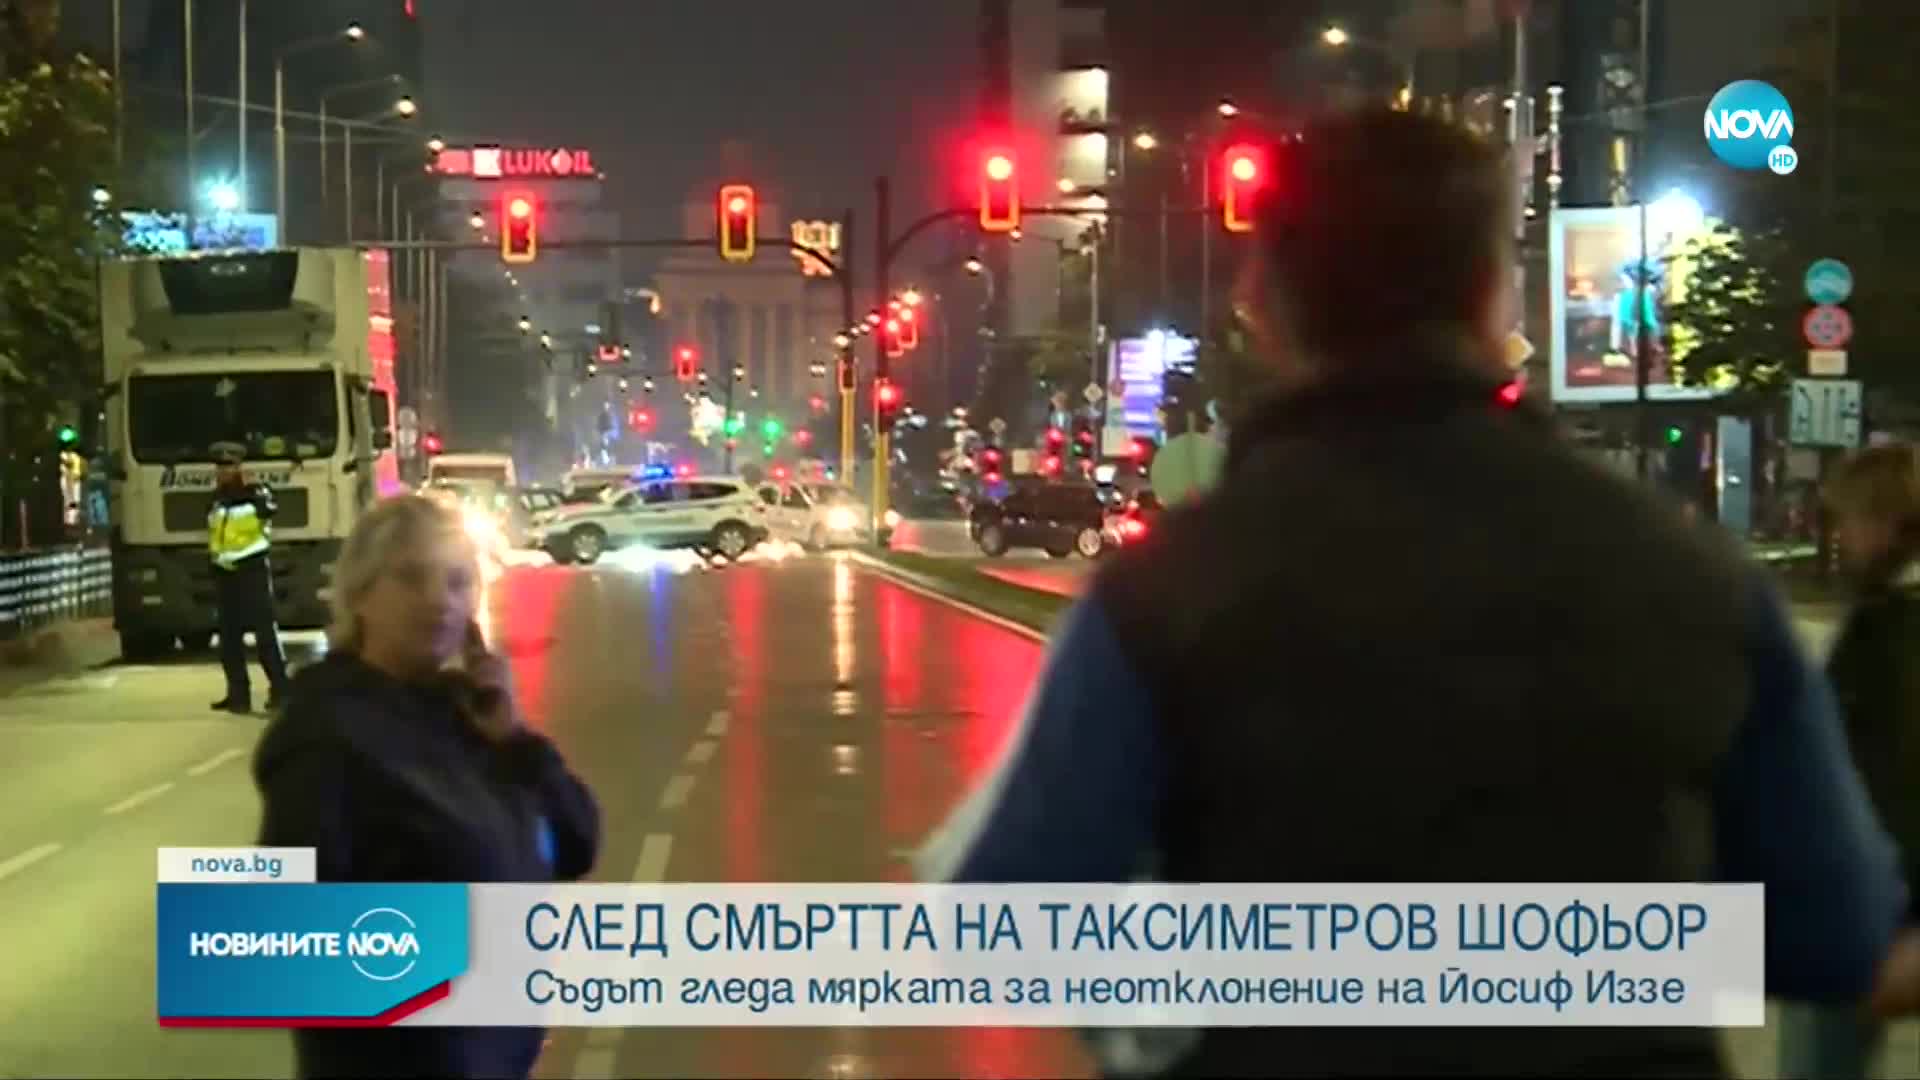 Гледат мярката на обвинения за смъртта на таксиметров шофьор в София